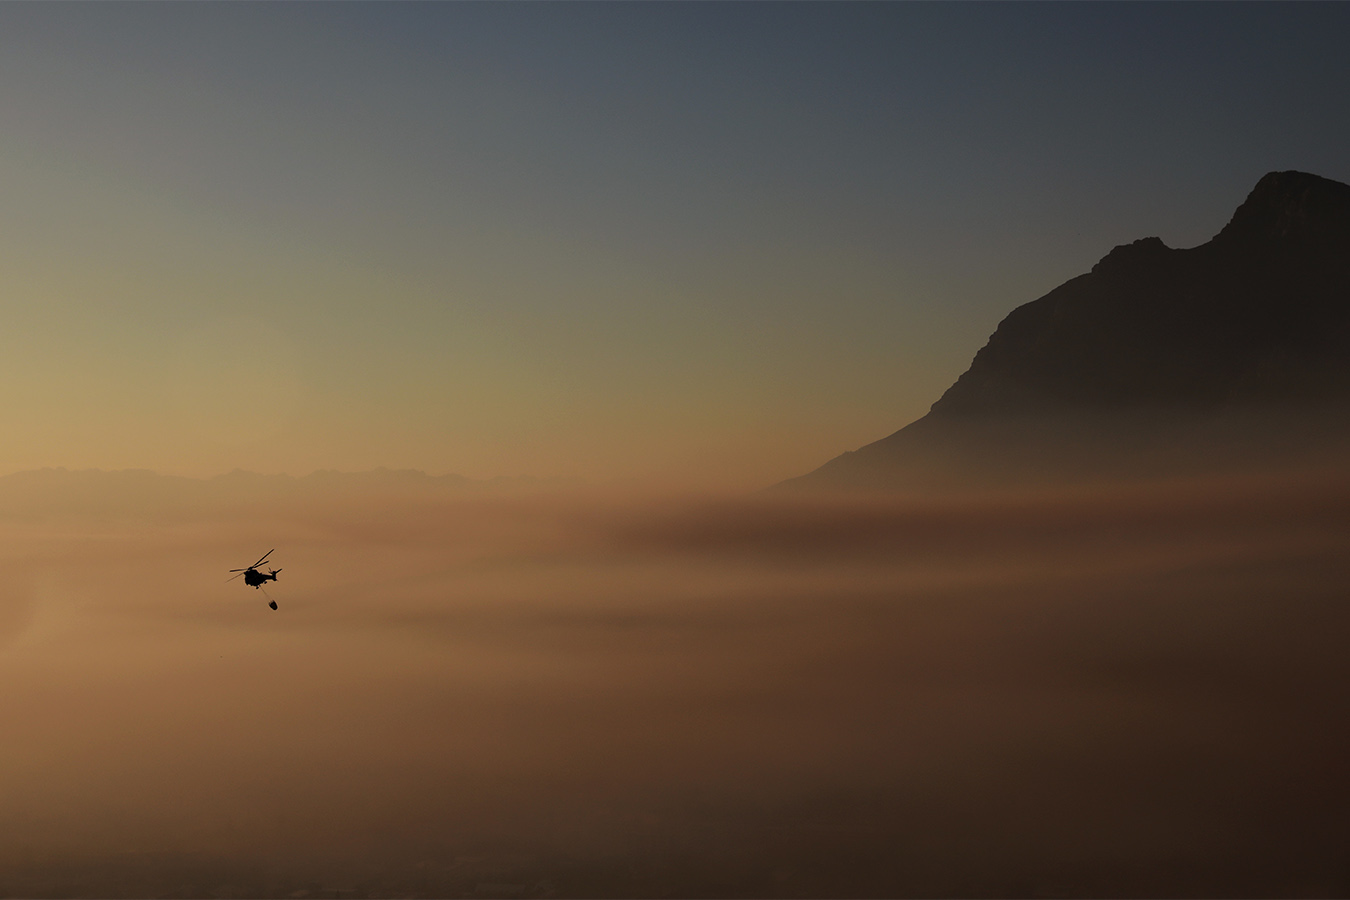 מסוק מרחף מעל העשן בעיר קייפטאון דרום אפריקה, 20 באפריל 2021. שריפת ענק המתפשטת במורדות הר השולחן המפורסם נשארה תחת שליטה.כבאים ומסוקים ניצלו את הרוחות הנמוכות כדי להכיל את השריפה. (AP Photo/Nardus Engelbrecht)